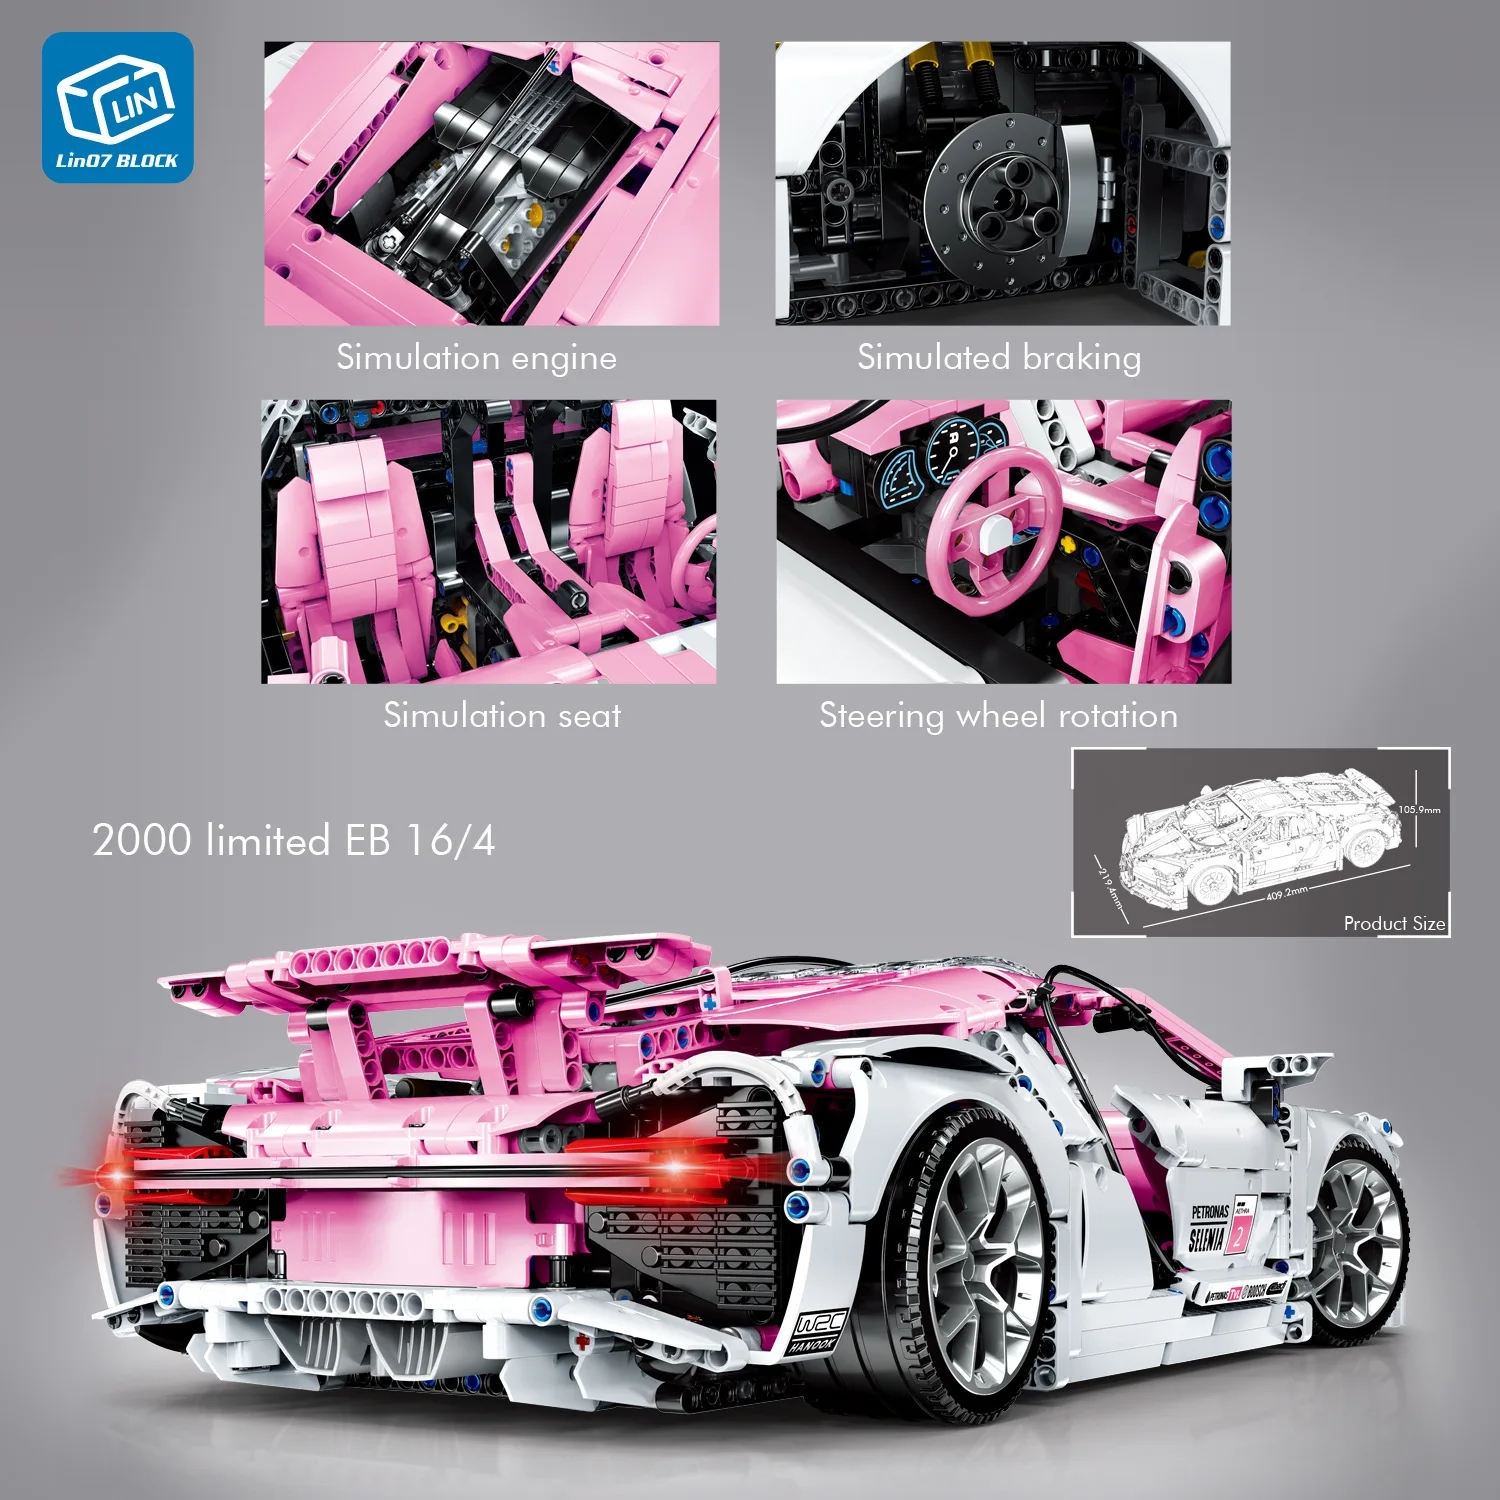 3618 шт., модель машины для гонщиков, маленькие частицы, для розового цвета, Bugatti, 1:10 масштаб, Techni, строительные блоки, набор кирпичей, игрушки для детей, подарки